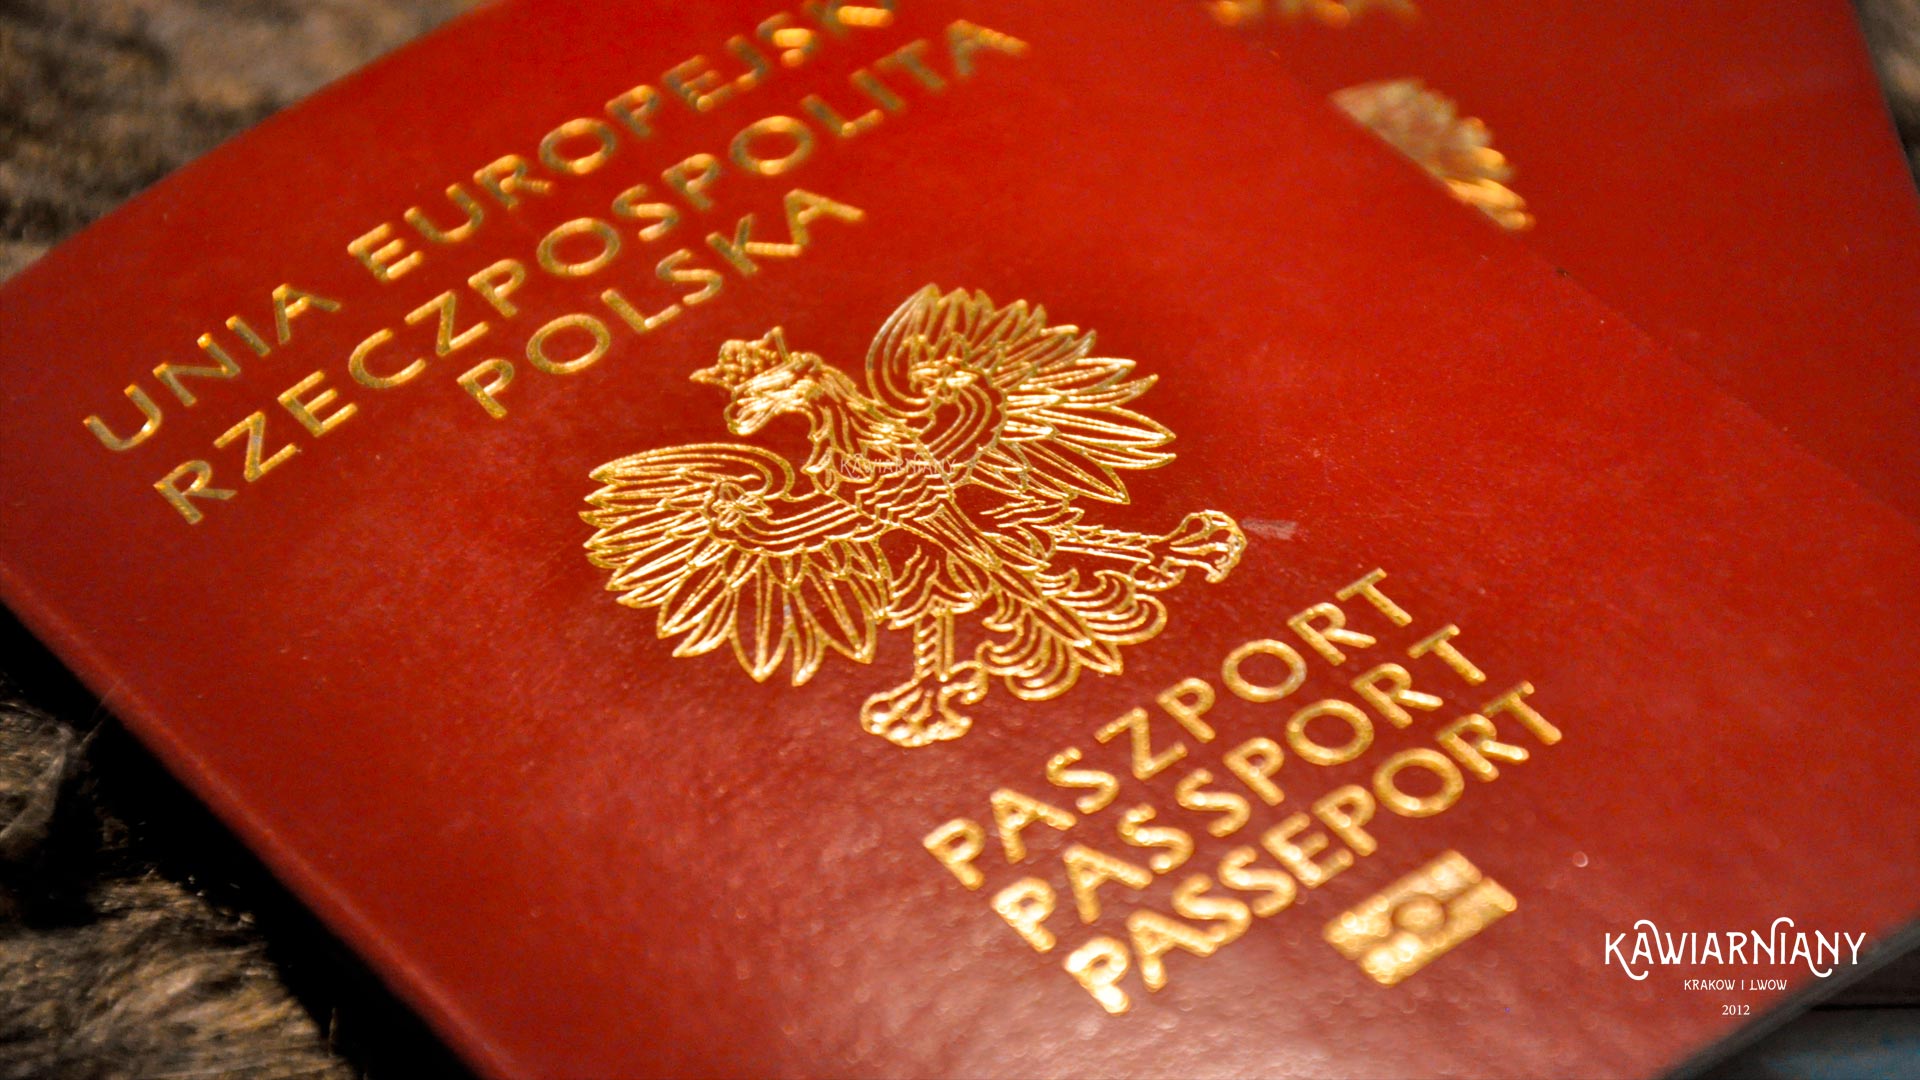 Czy do Holandii jest potrzebny paszport czy dowód? Holandia dokumenty